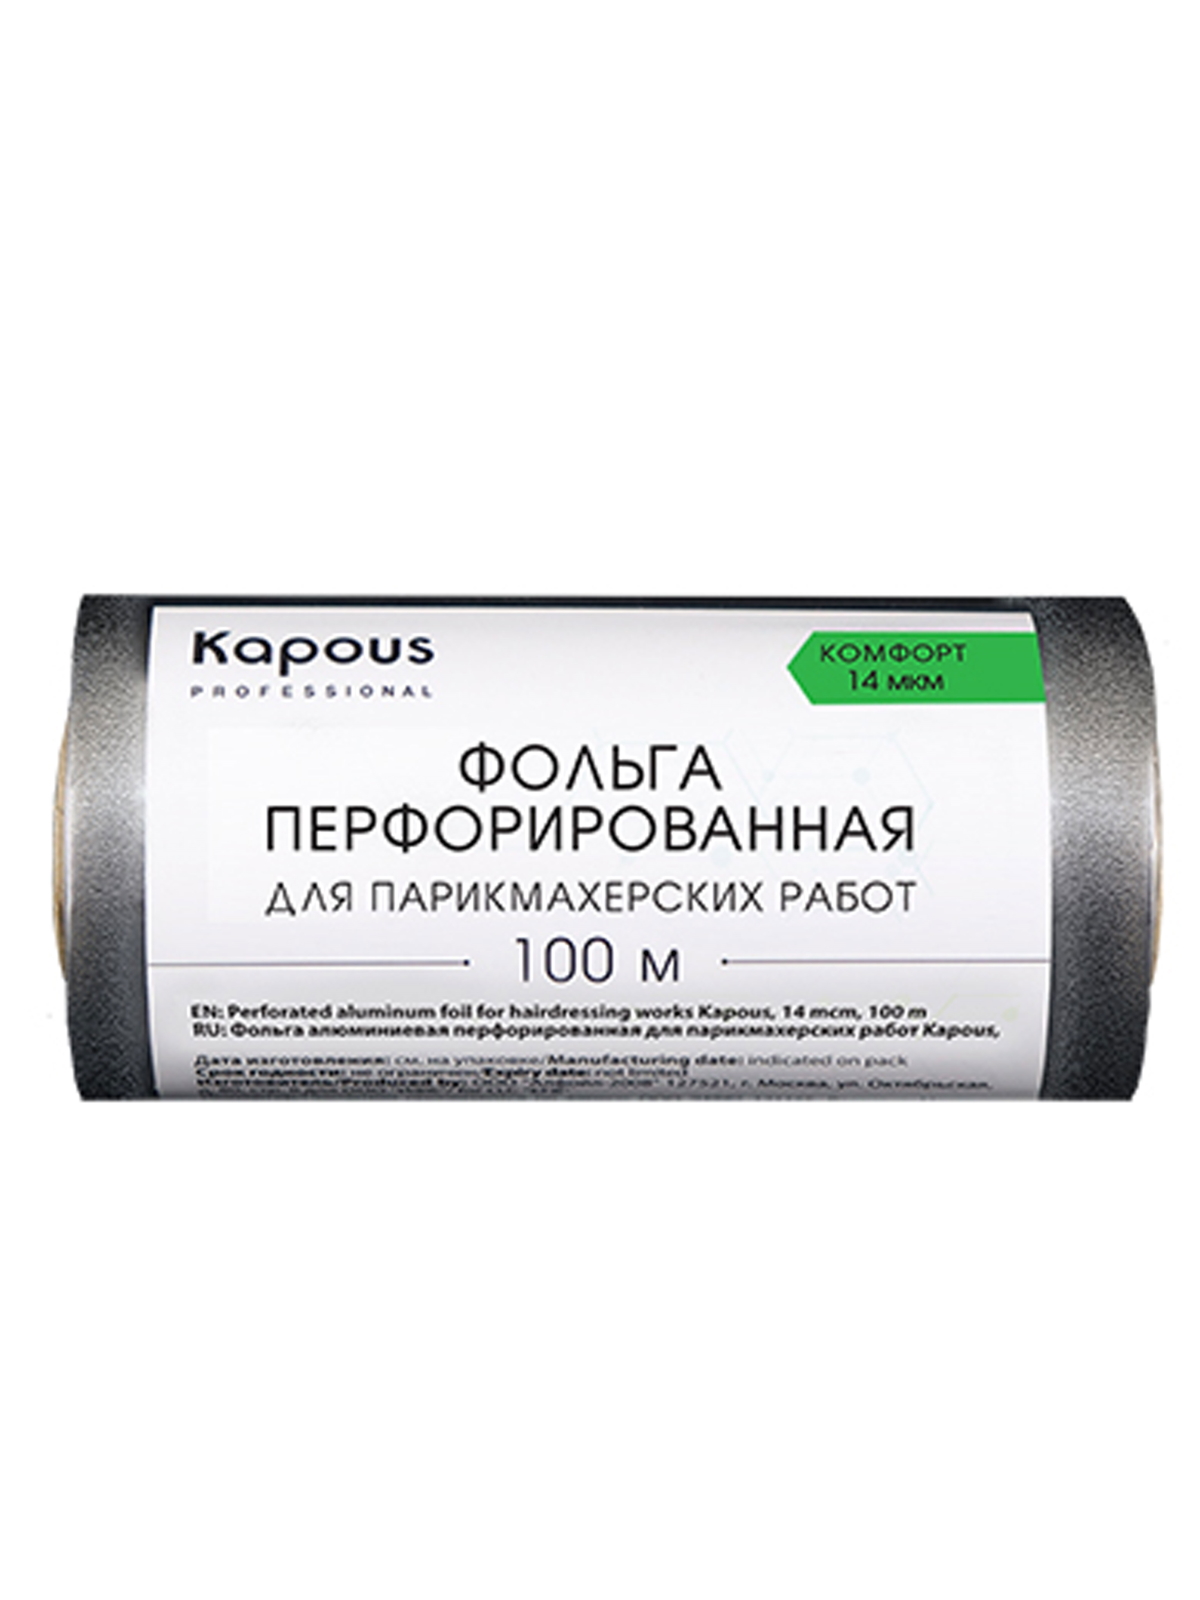 Фольга для парикмахерских работ KAPOUS PROFESSIONAL перфорированная 12см х 100м 14 мкм